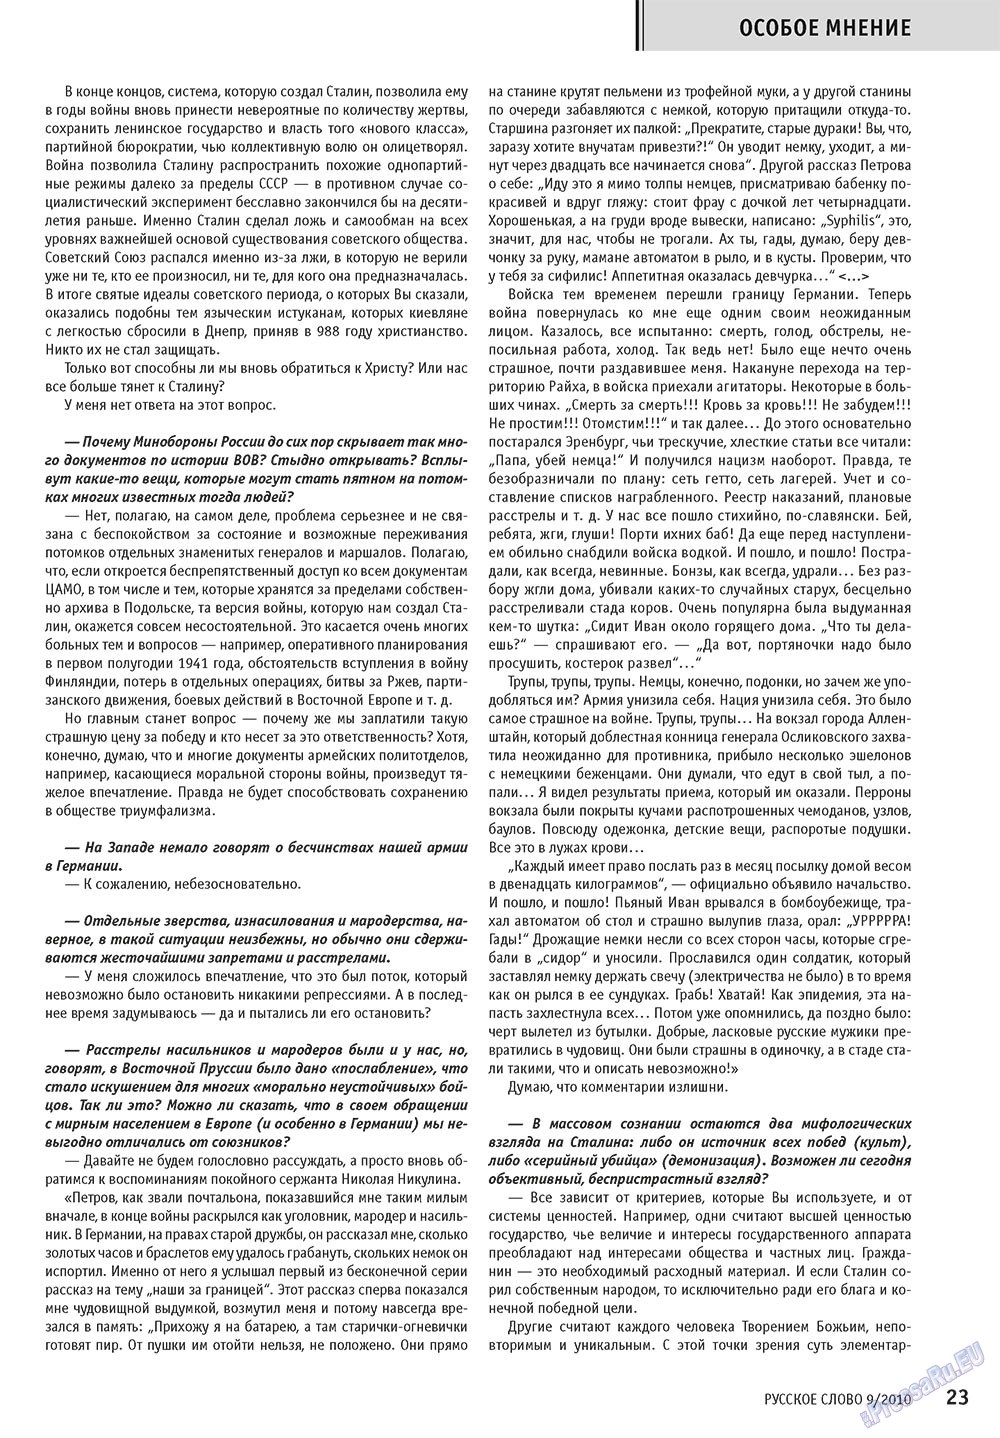 Русское слово, журнал. 2010 №9 стр.25